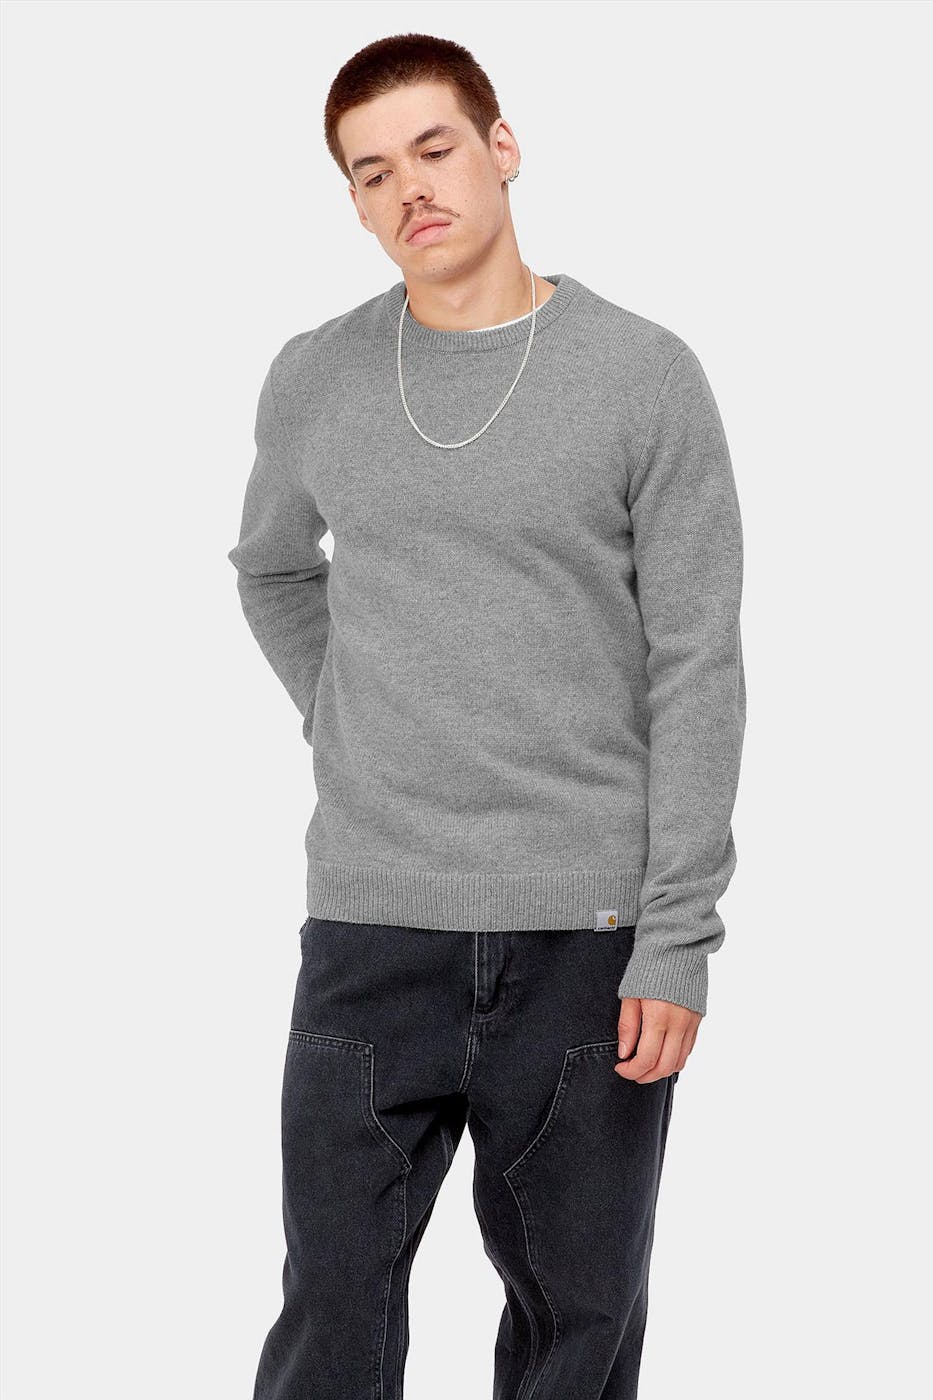 Carhartt WIP - Grijze Allen sweater